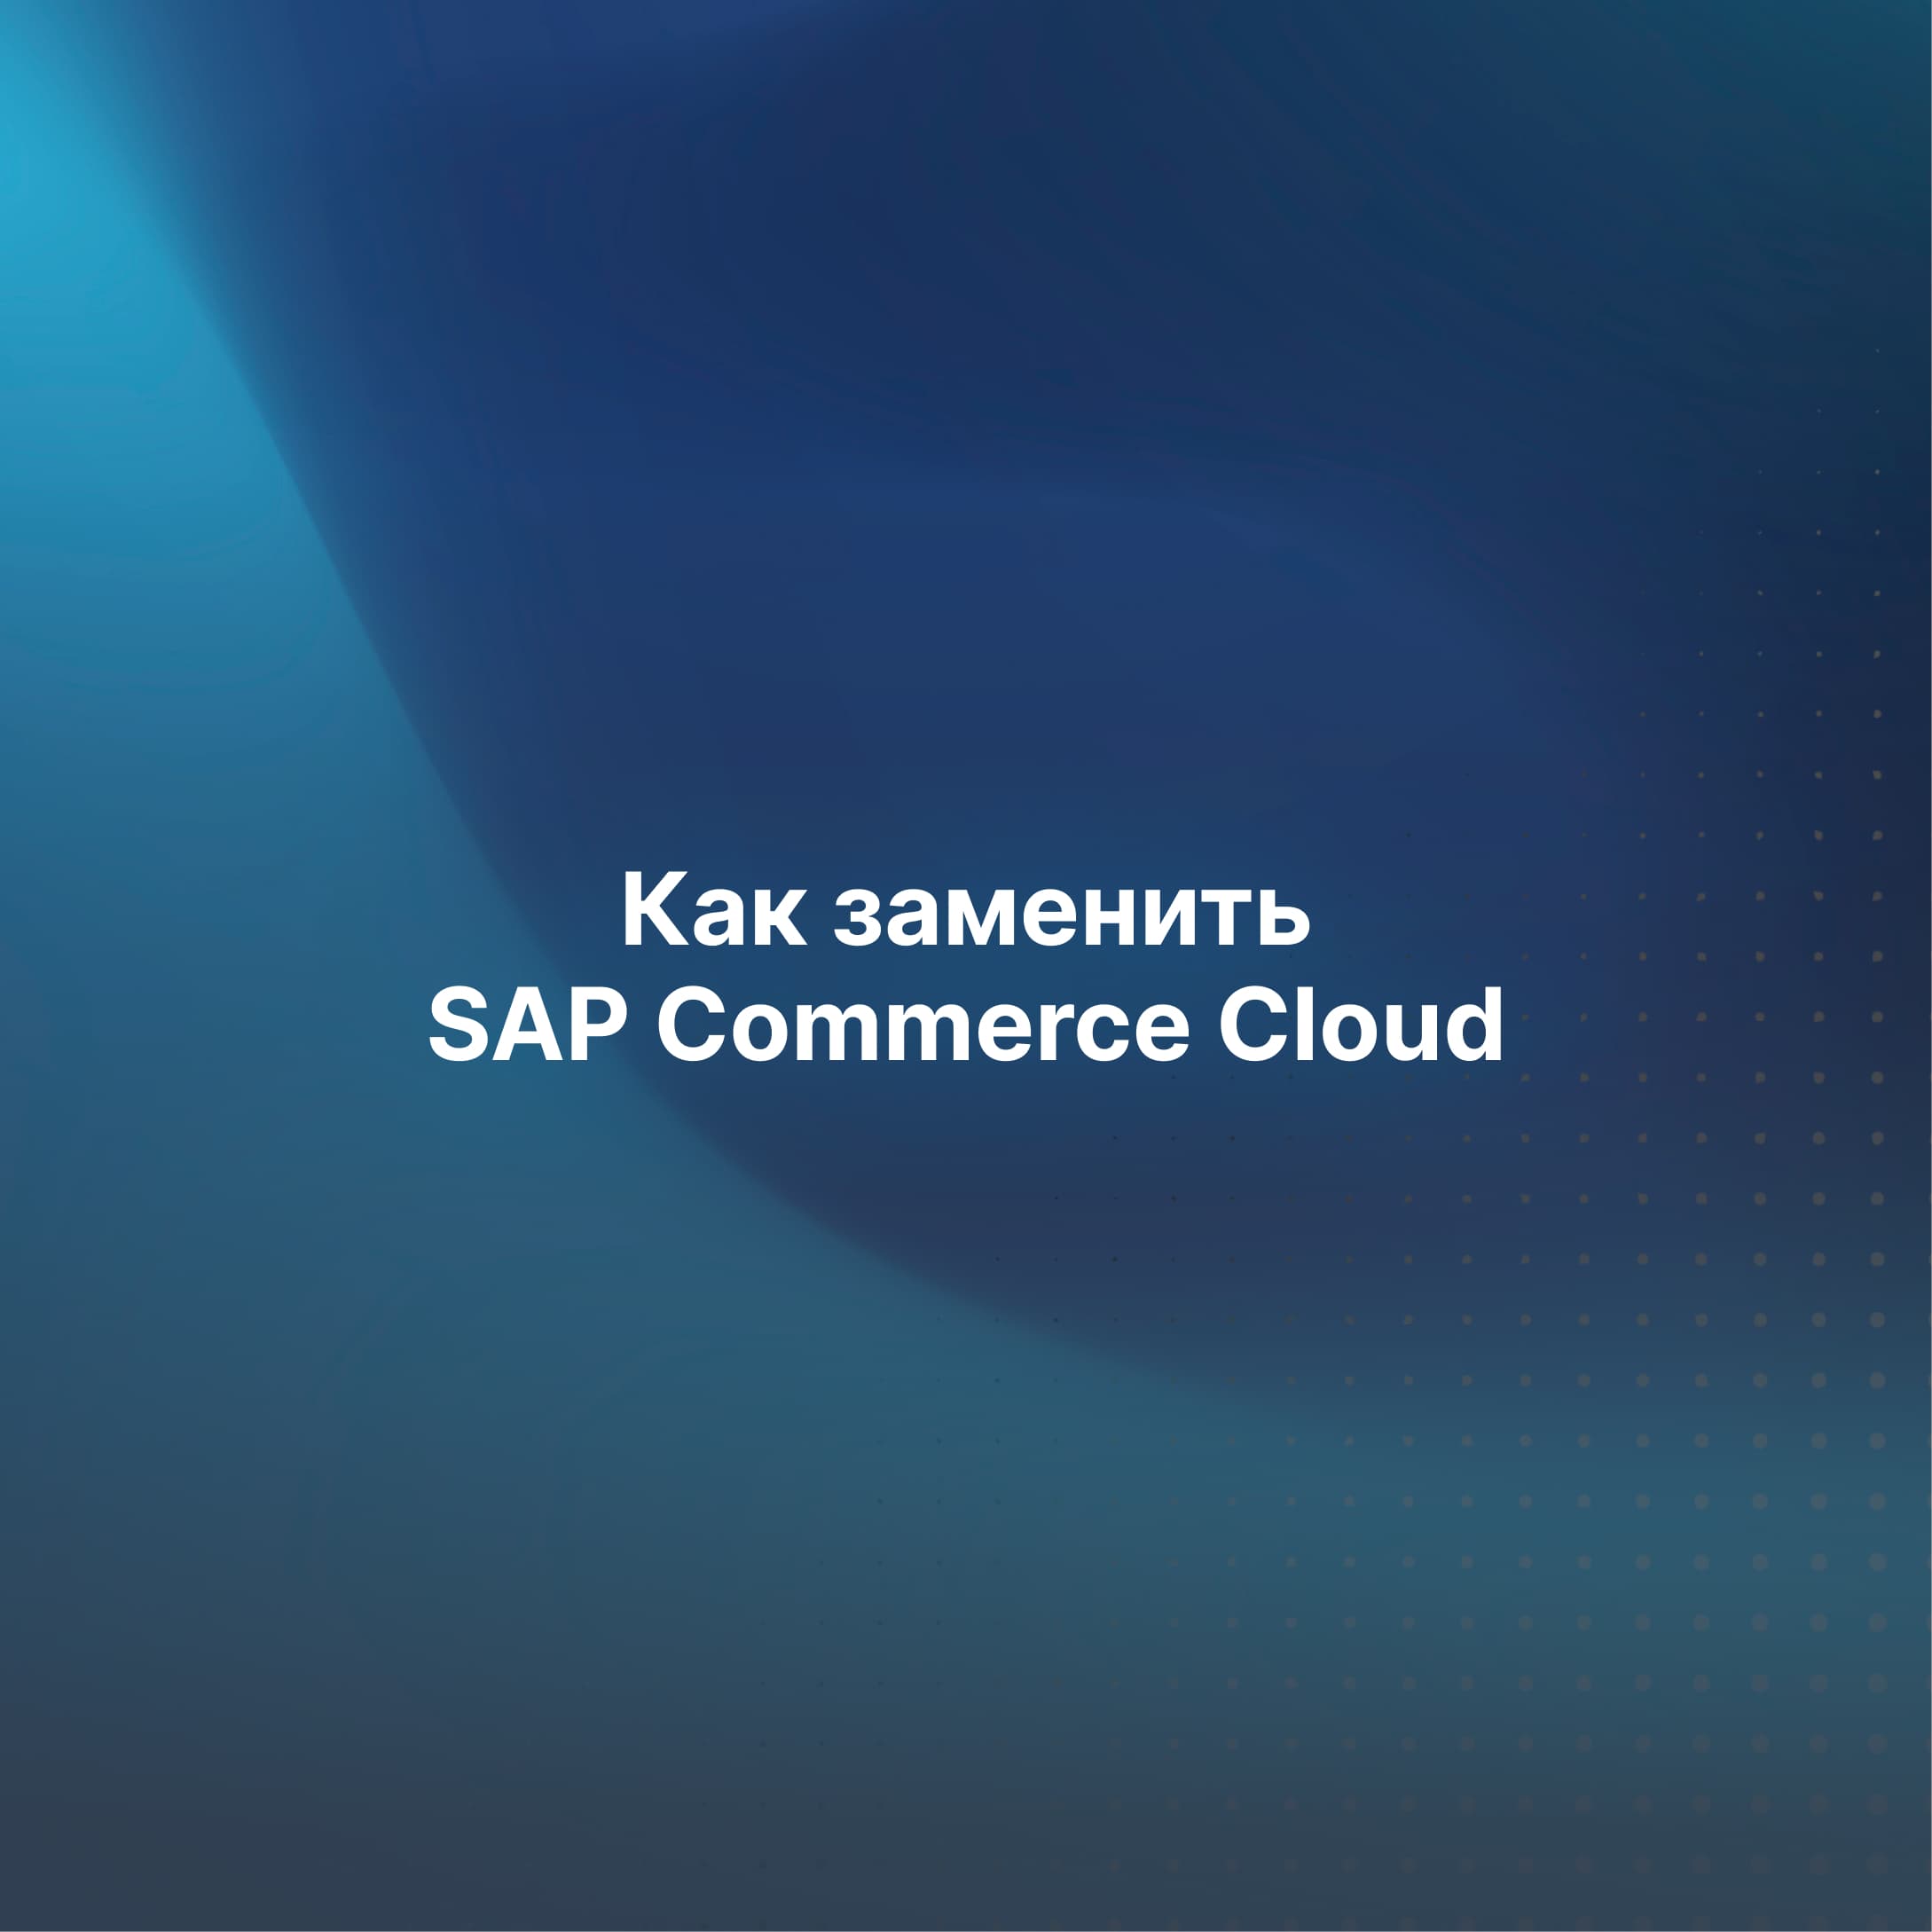 Как за 4 месяца заменить SAP Commerce Cloud